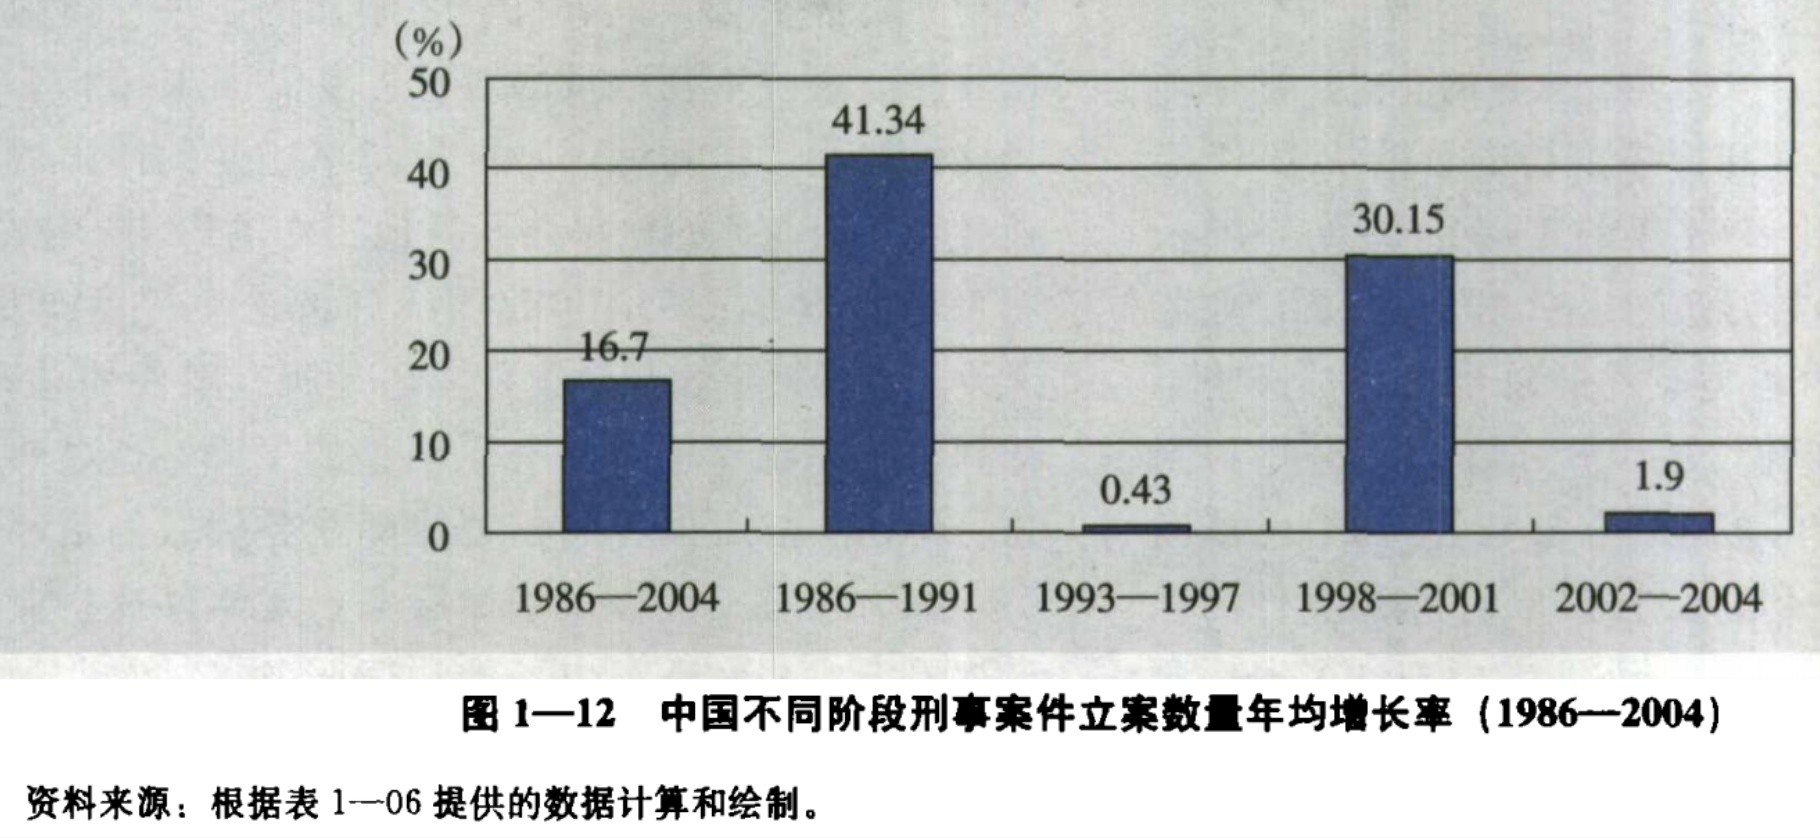 中国的犯罪率低?问题在于你确定中国真的有犯罪率统计吗?来看看吧。